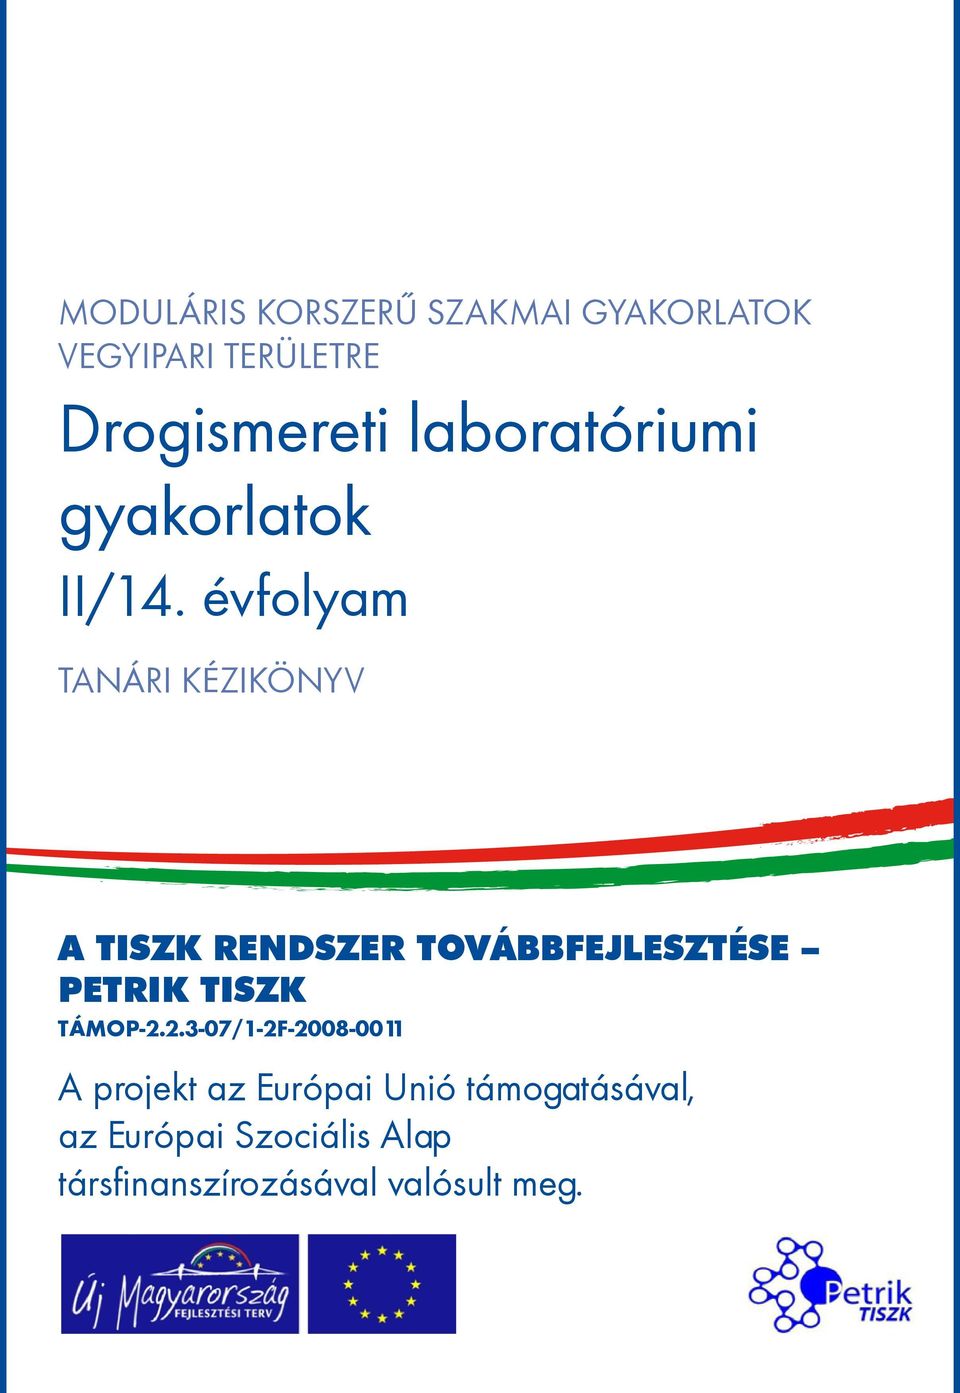 évfolyam tanári kézikönyv A TISZK rendszer továbbfejlesztése Petrik TISZK